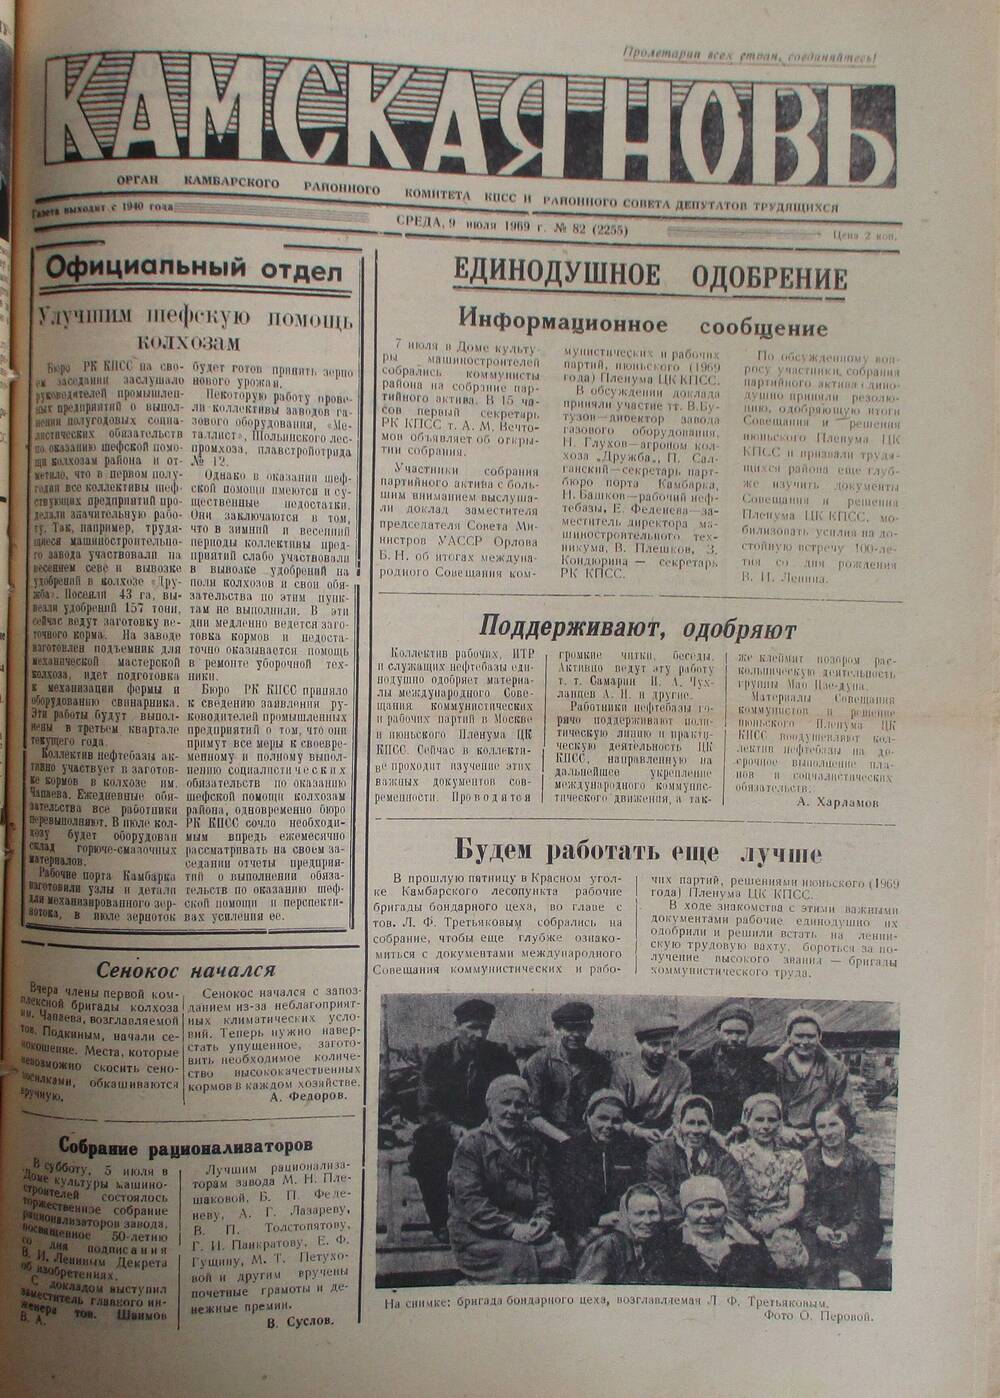 Газеты Камская новь за 1969 год, орган Камбарского райсовета и  РККПСС, с №1 по №66, с №68 по №156. №82.